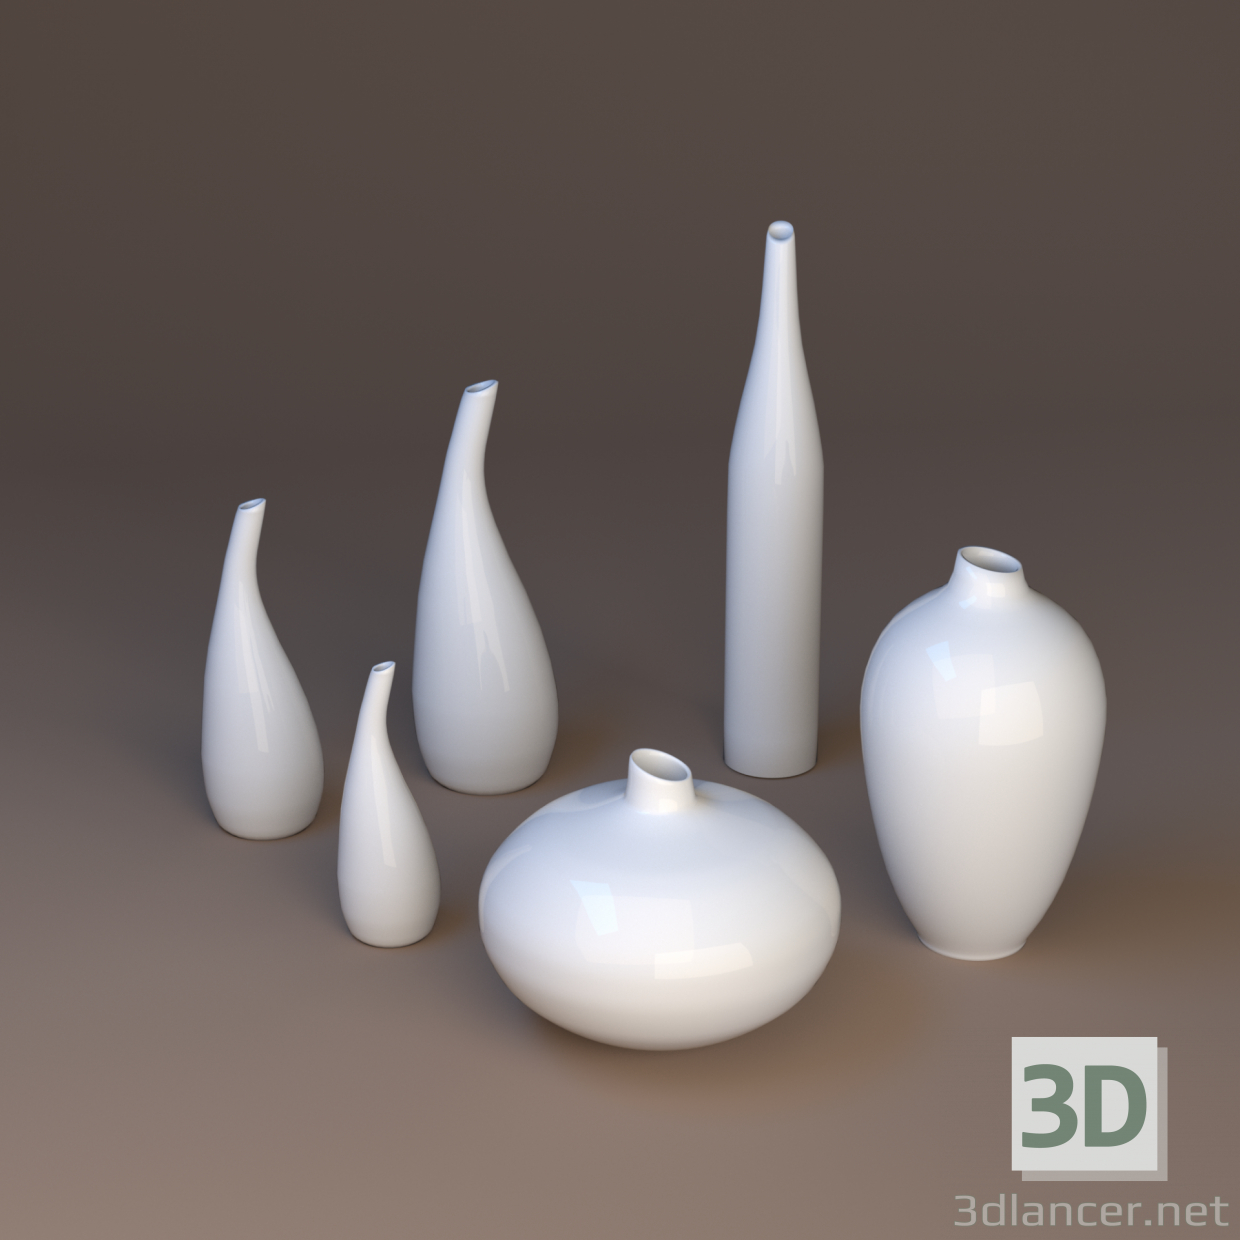 Porzellanvasen 3D-Modell kaufen - Rendern